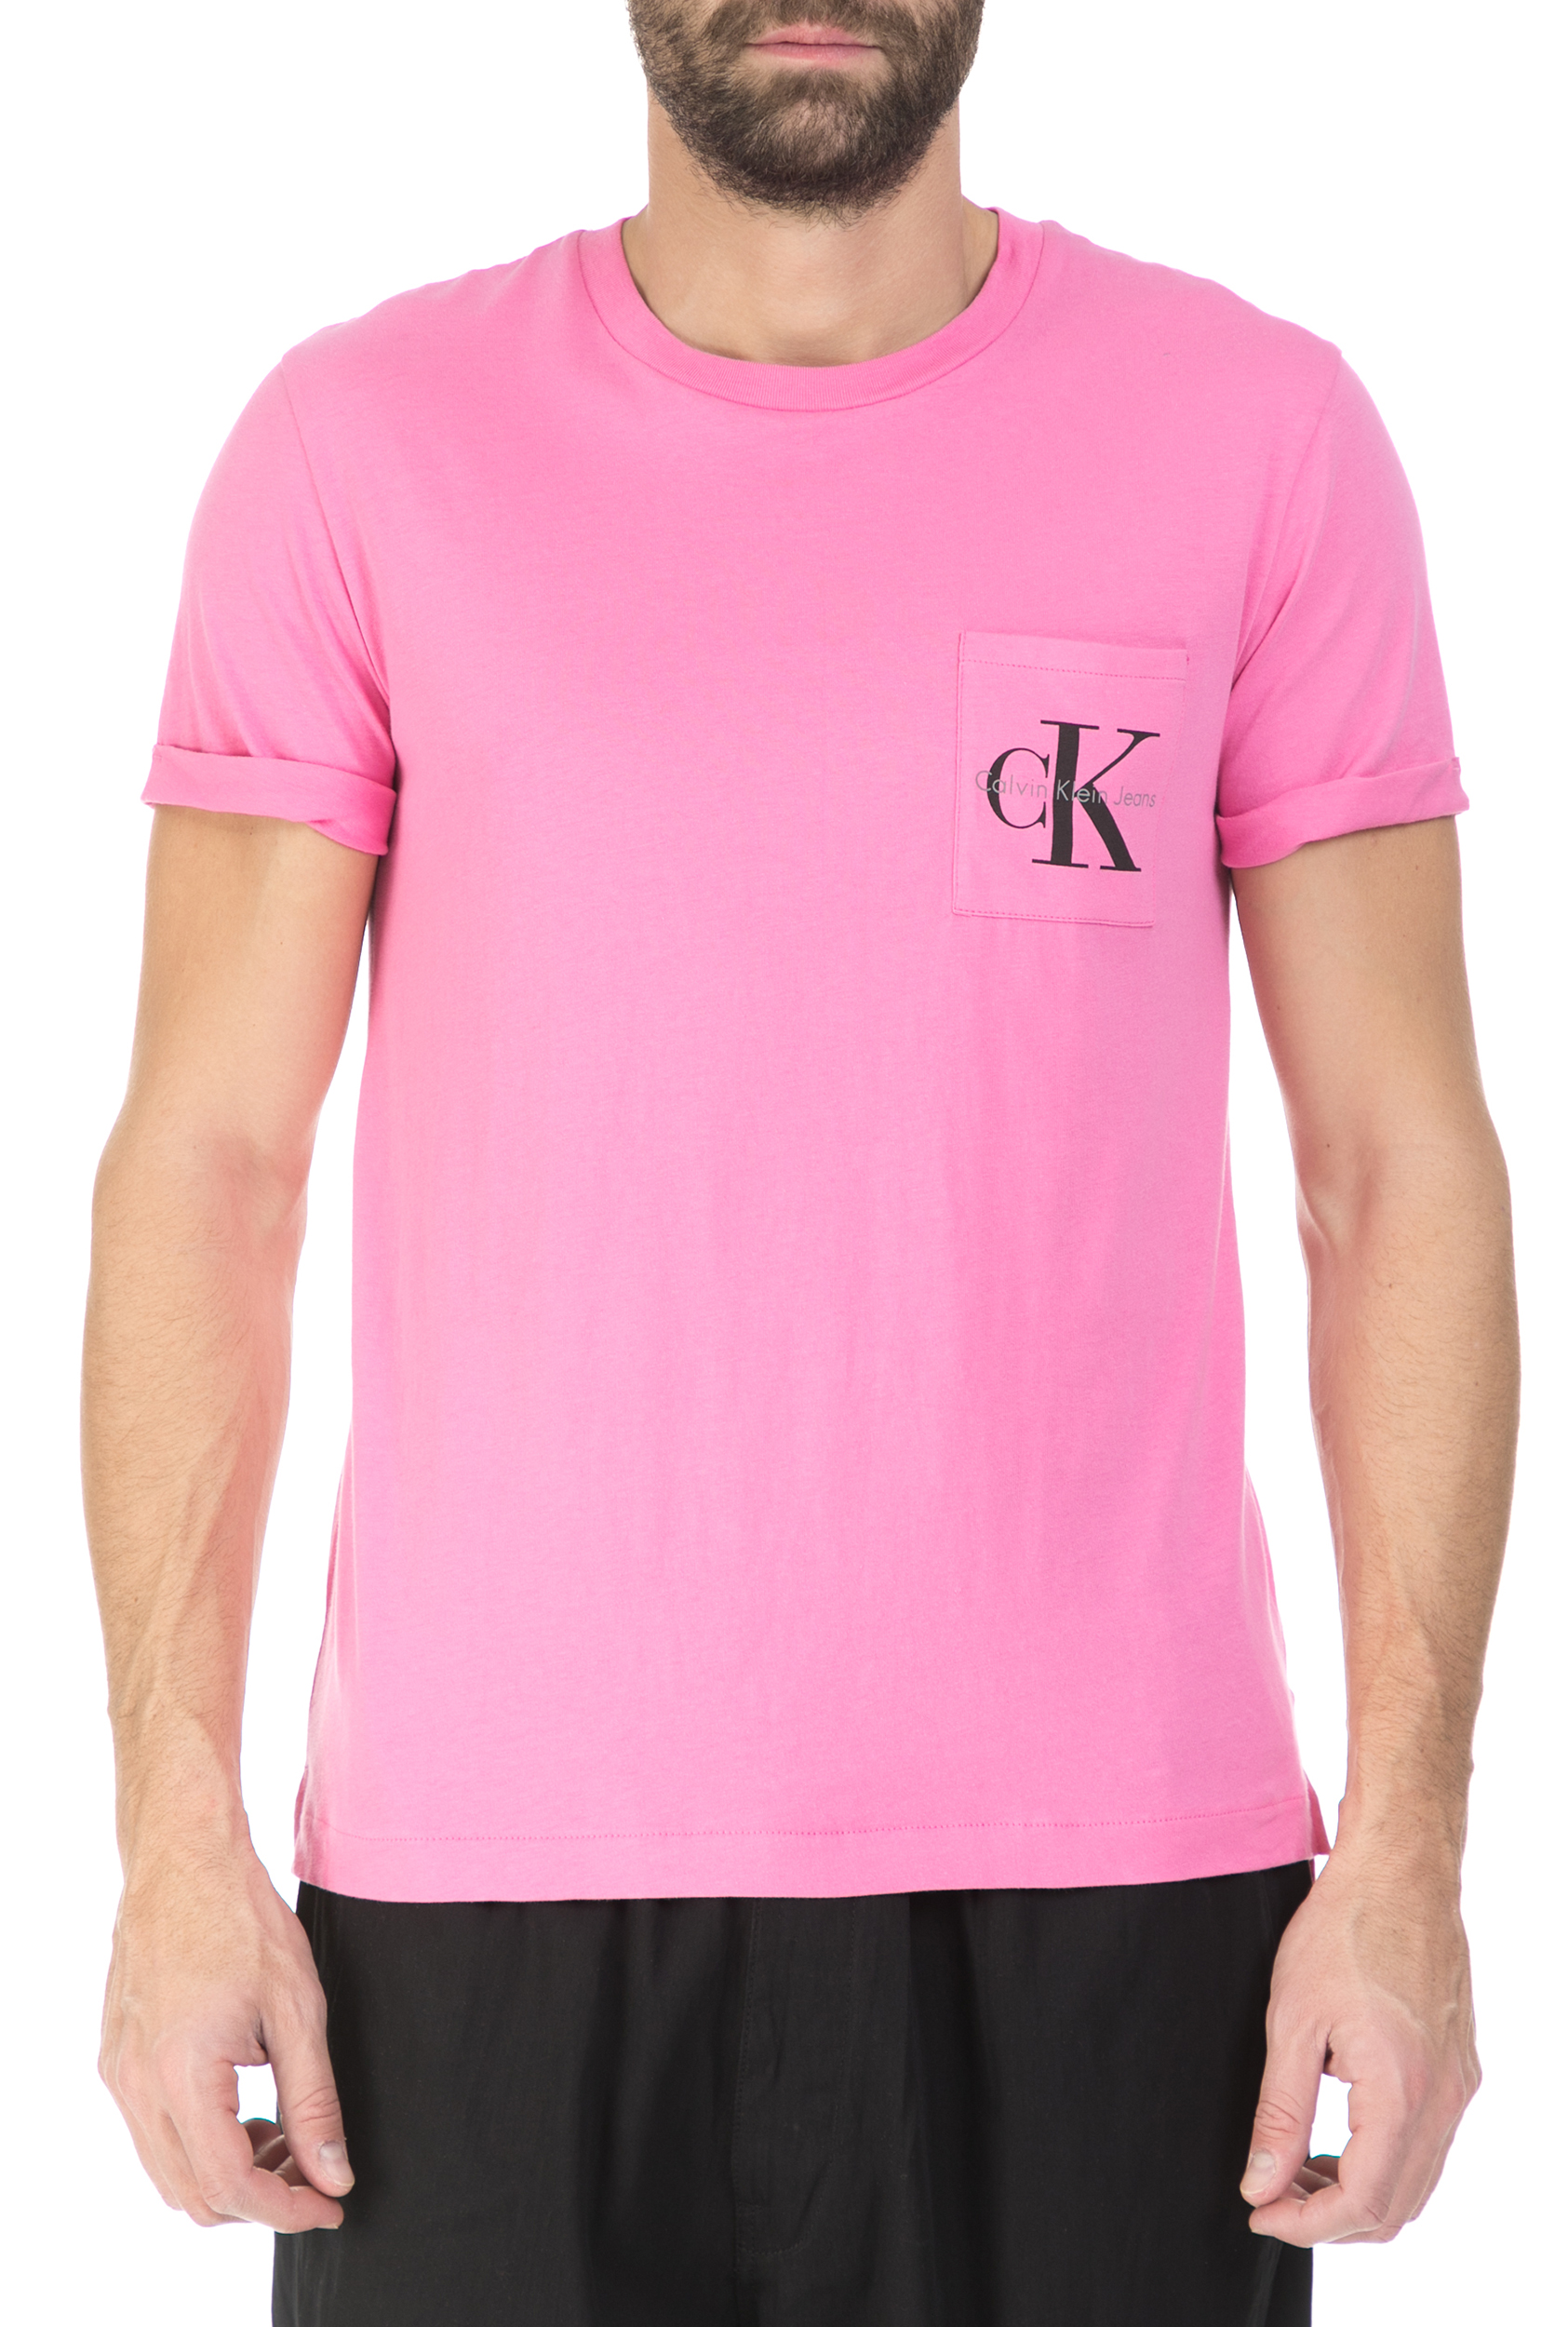 Ανδρικά/Ρούχα/Μπλούζες/Κοντομάνικες CALVIN KLEIN JEANS - Ανδρική κοντομάνικη μπλούζα Calvin Klein Jeans ροζ